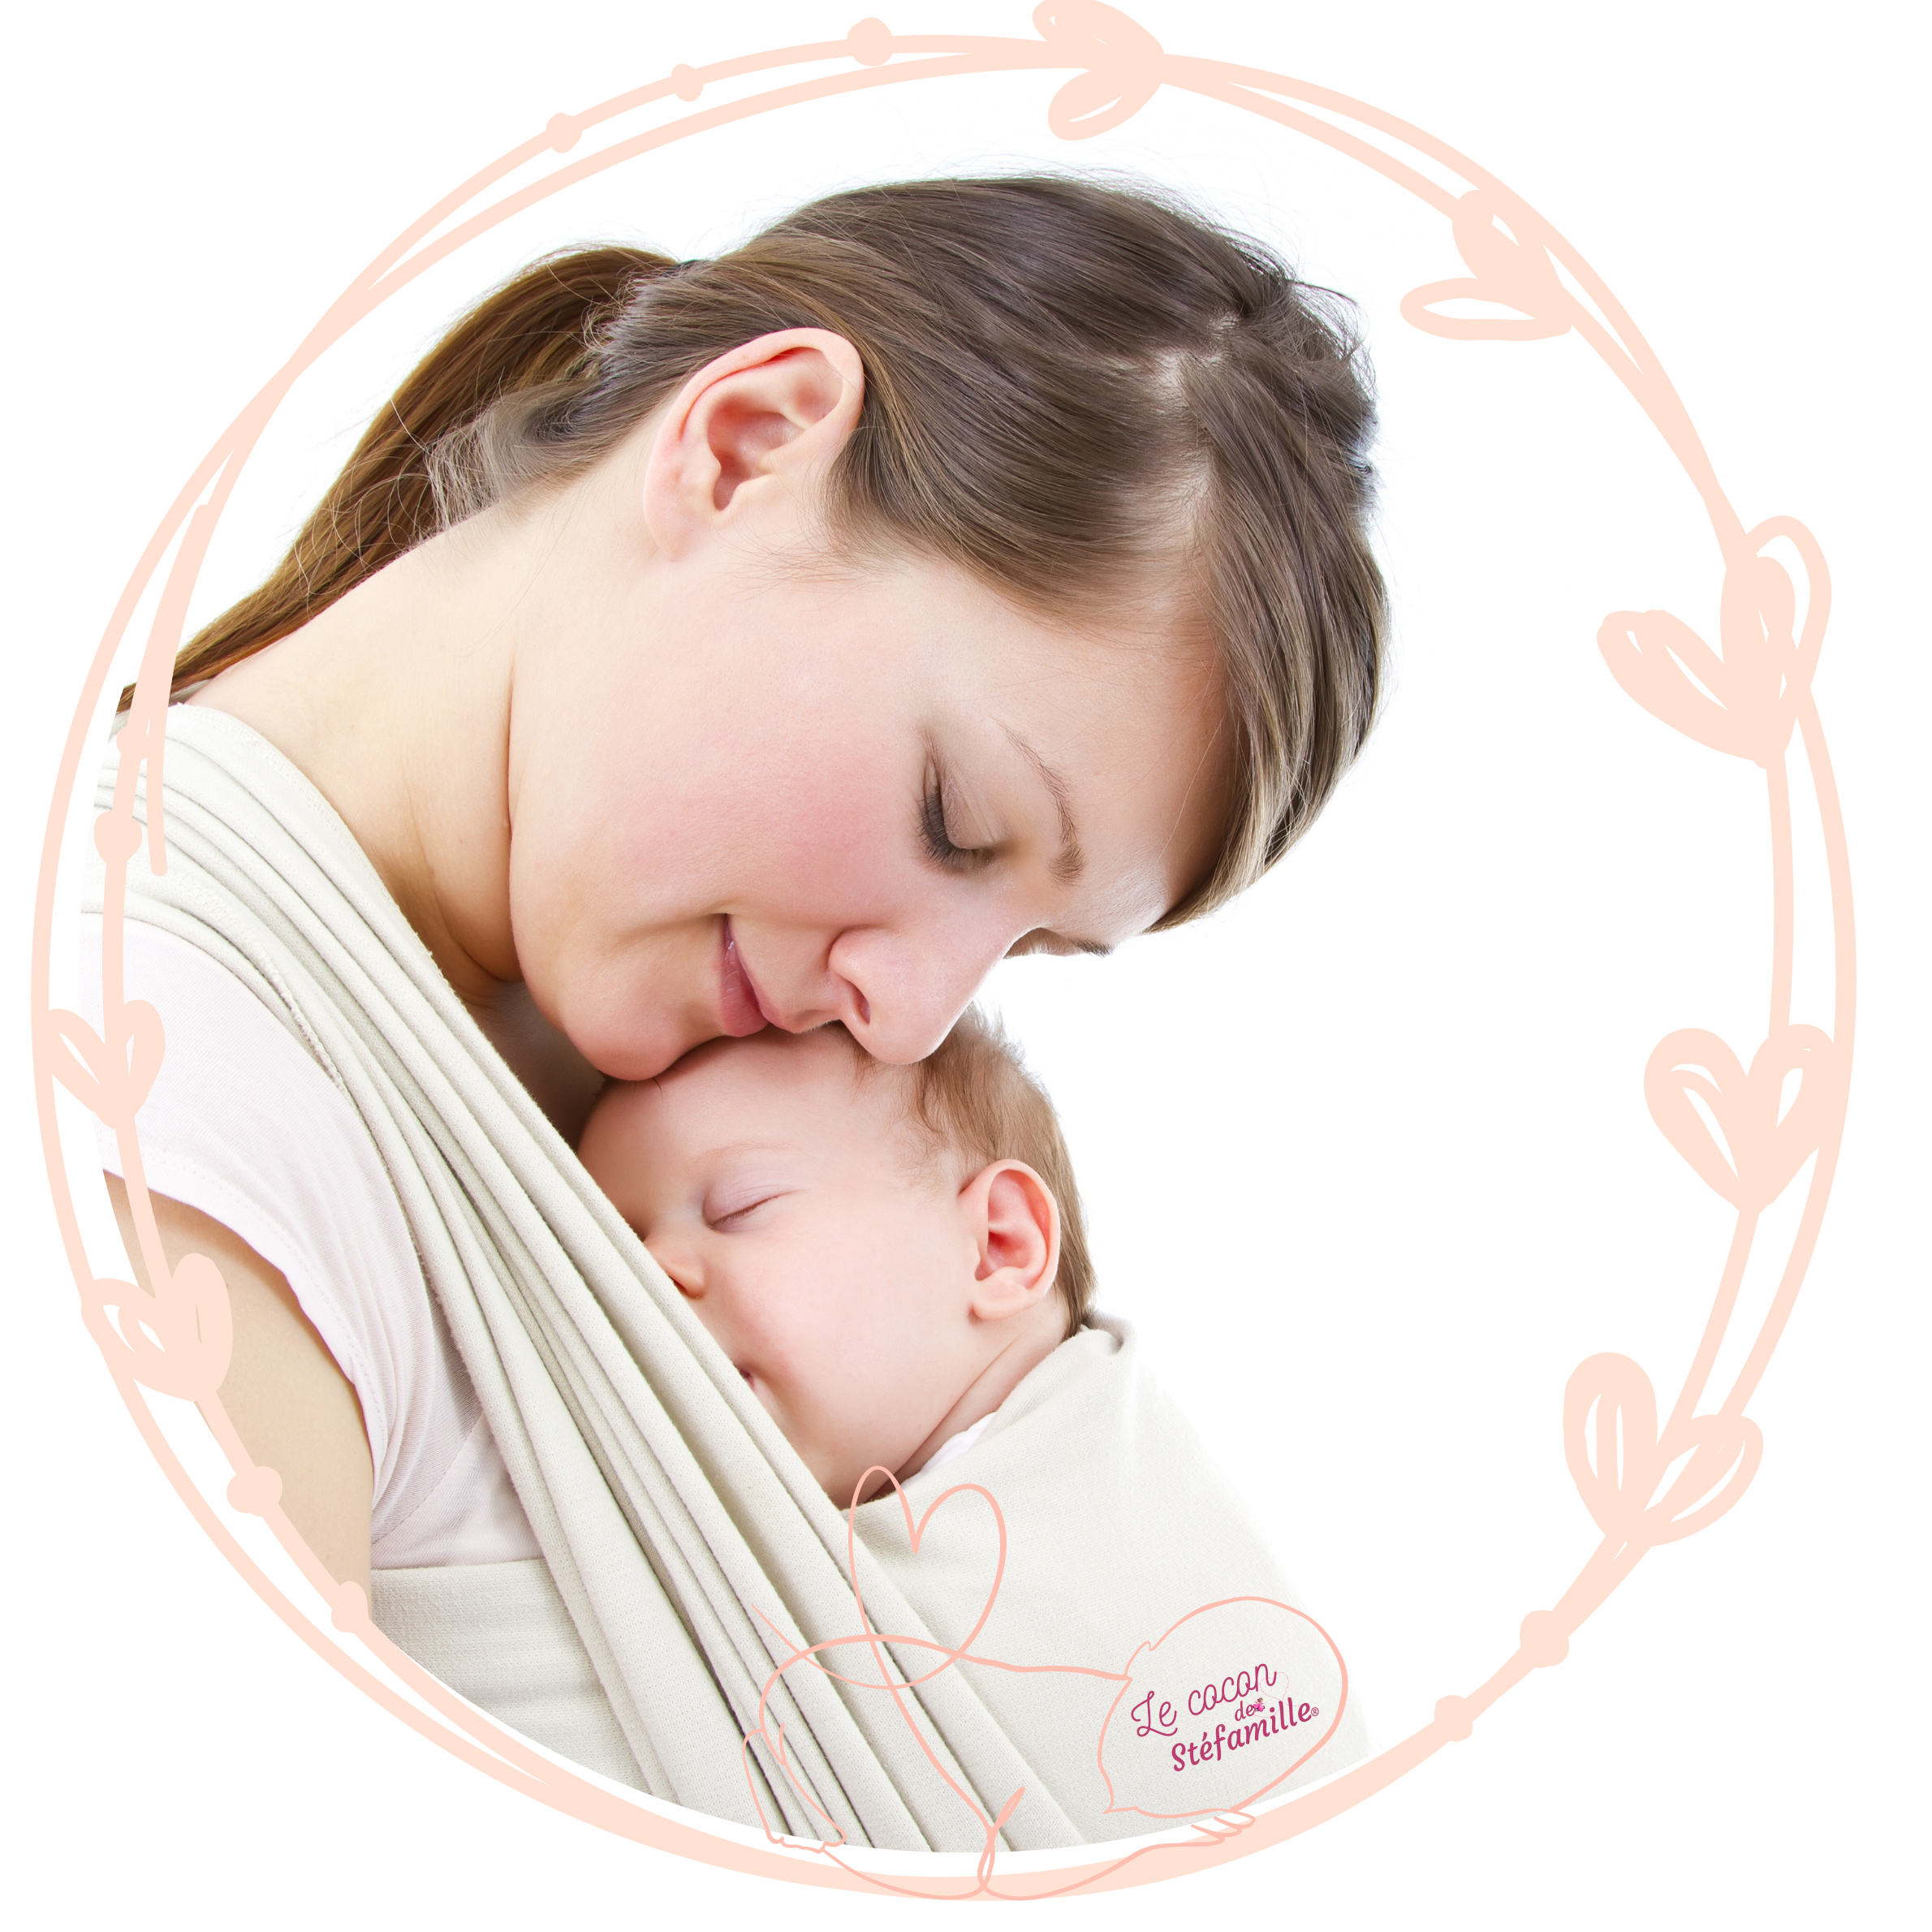 peau à peau, périnatal, massage bébé, portage physiologique, dme, bébé signe, maternage proximal, allaitement, cododo, parentalité positive